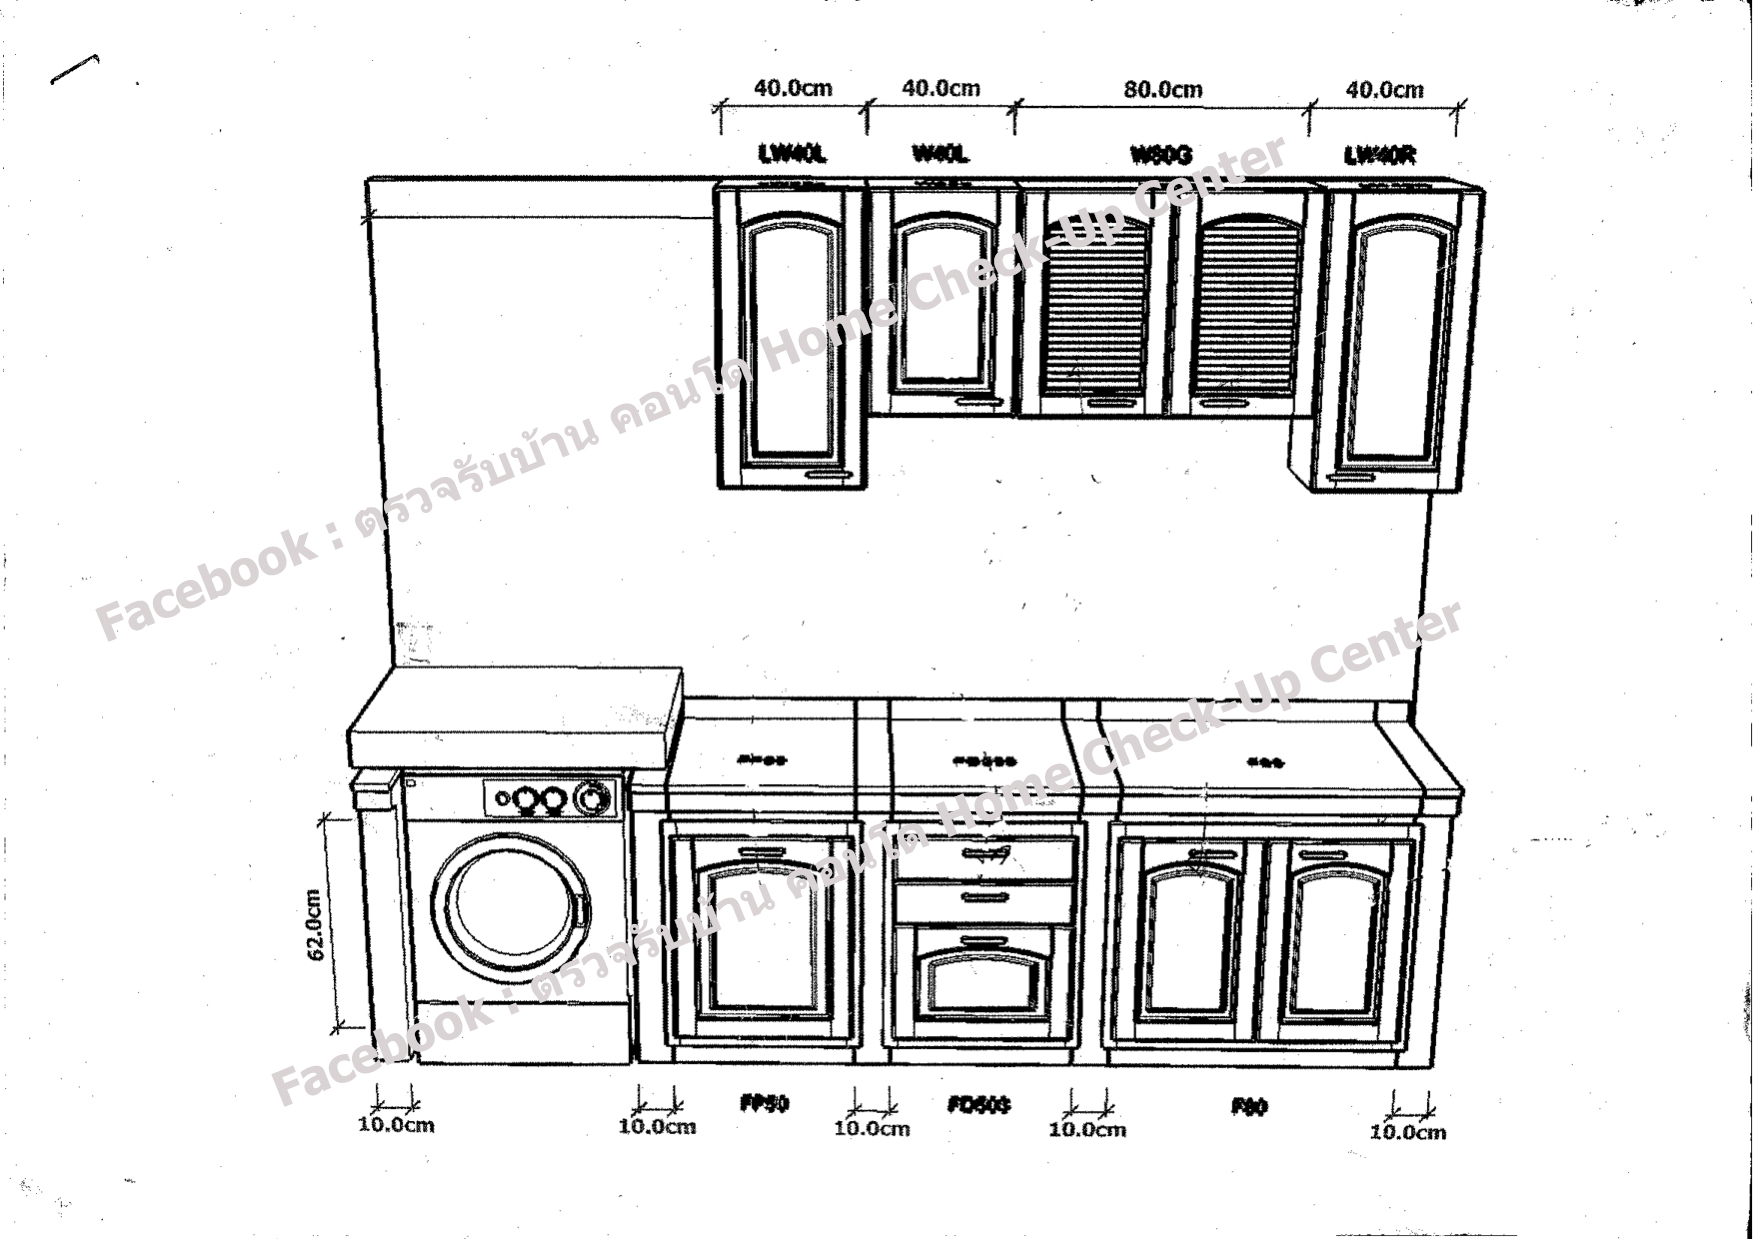 ตัวอย่างการออกแบบห้องครัวด้วยโปรแกรม3D